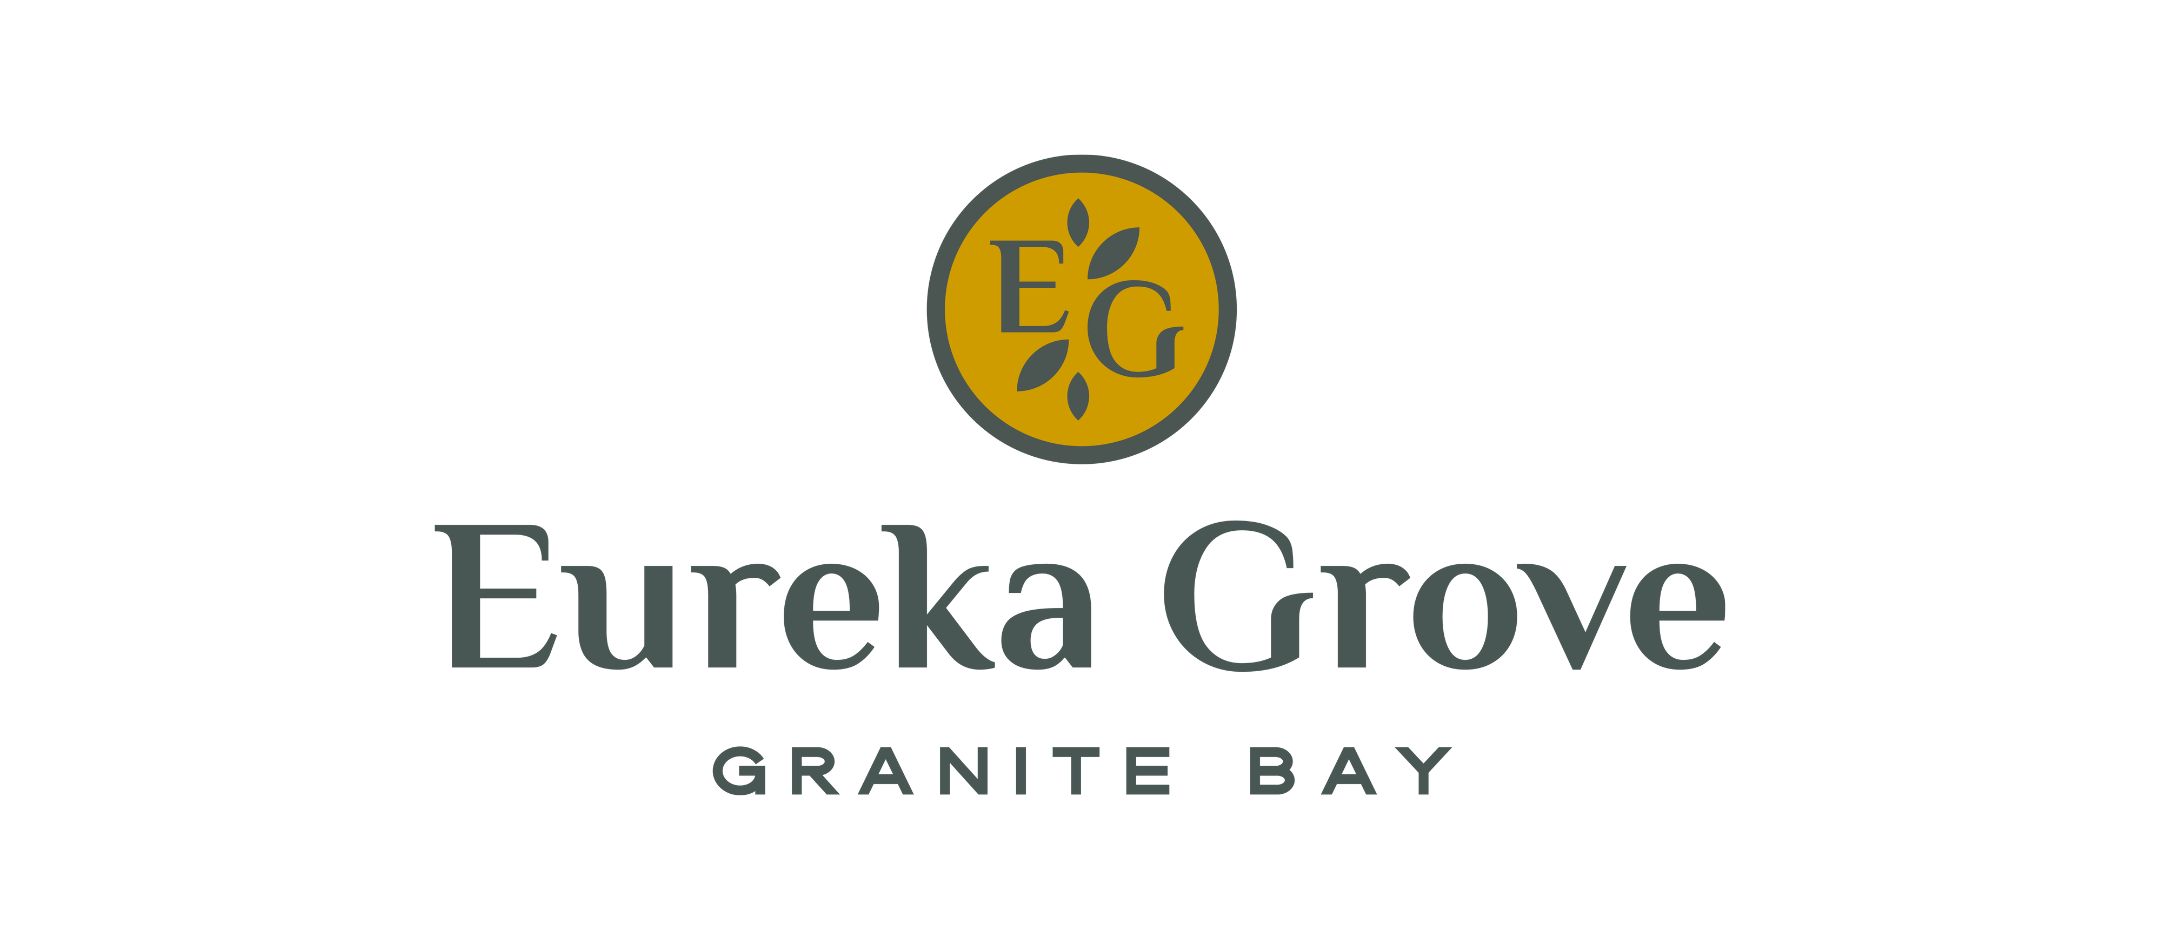 Eureka Grove logo